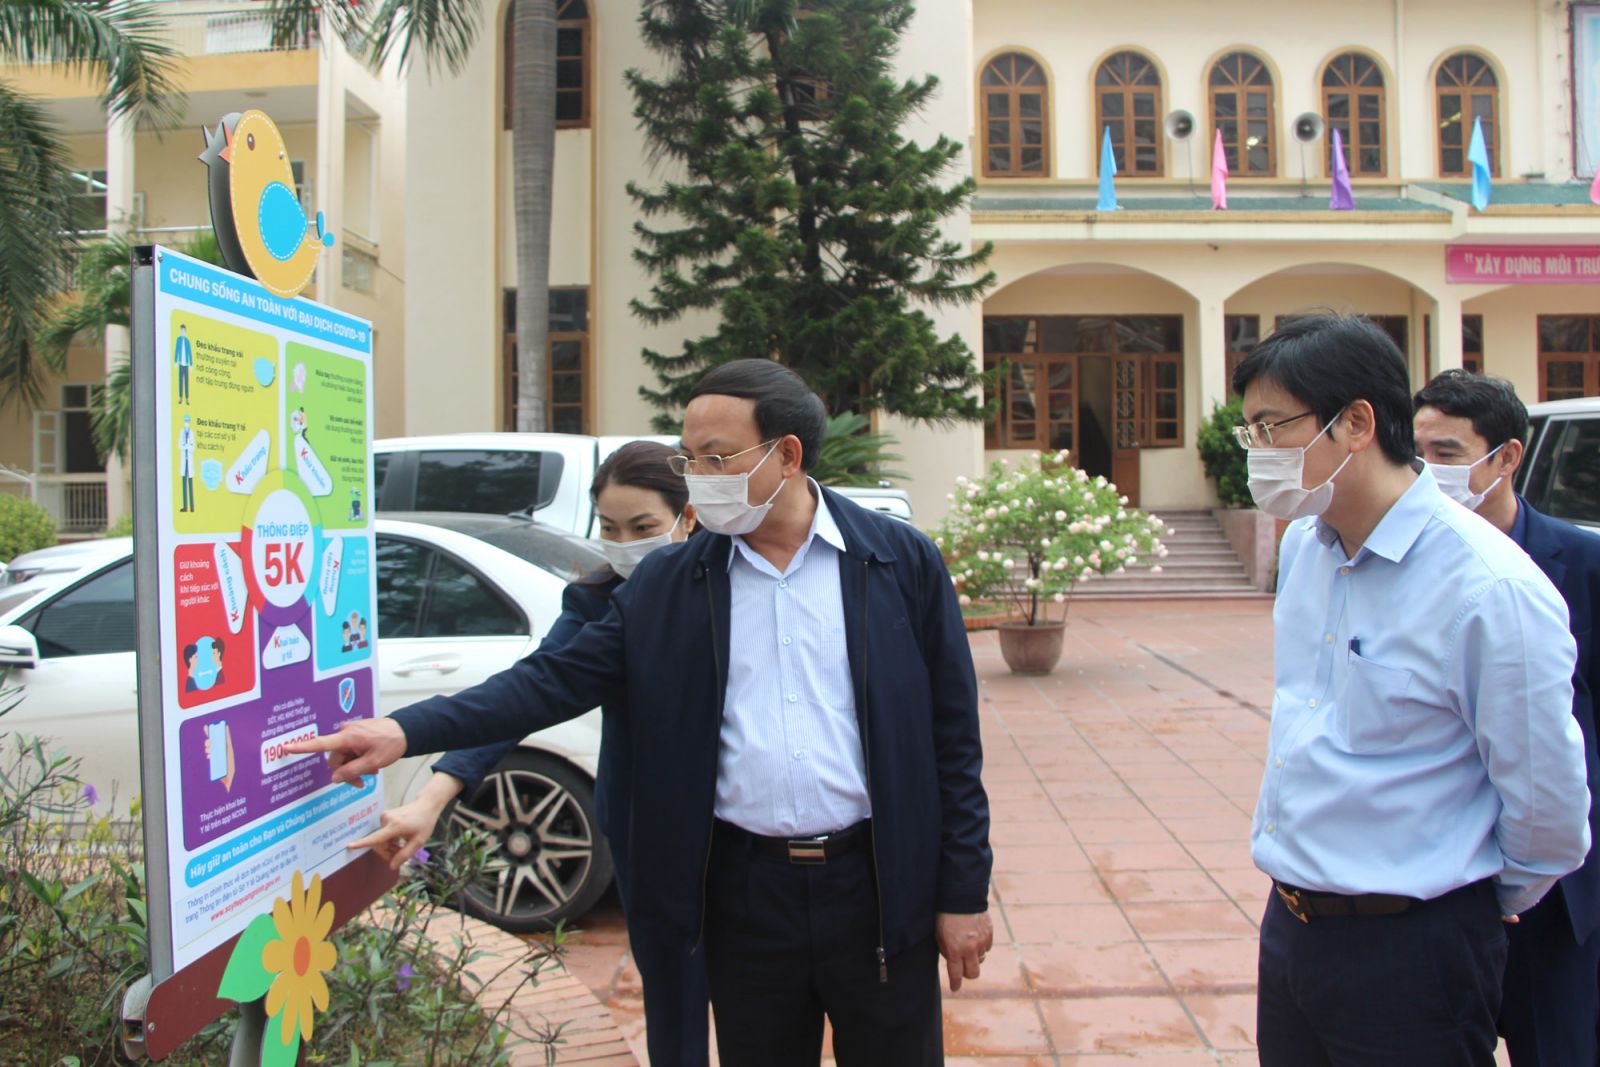 Bí thư Tỉnh ủy Quảng Ninh yêu cầu các trường học hướng dẫn học sinh tuân thủ nghiêm quy tắc 5K của Bộ Y tế.